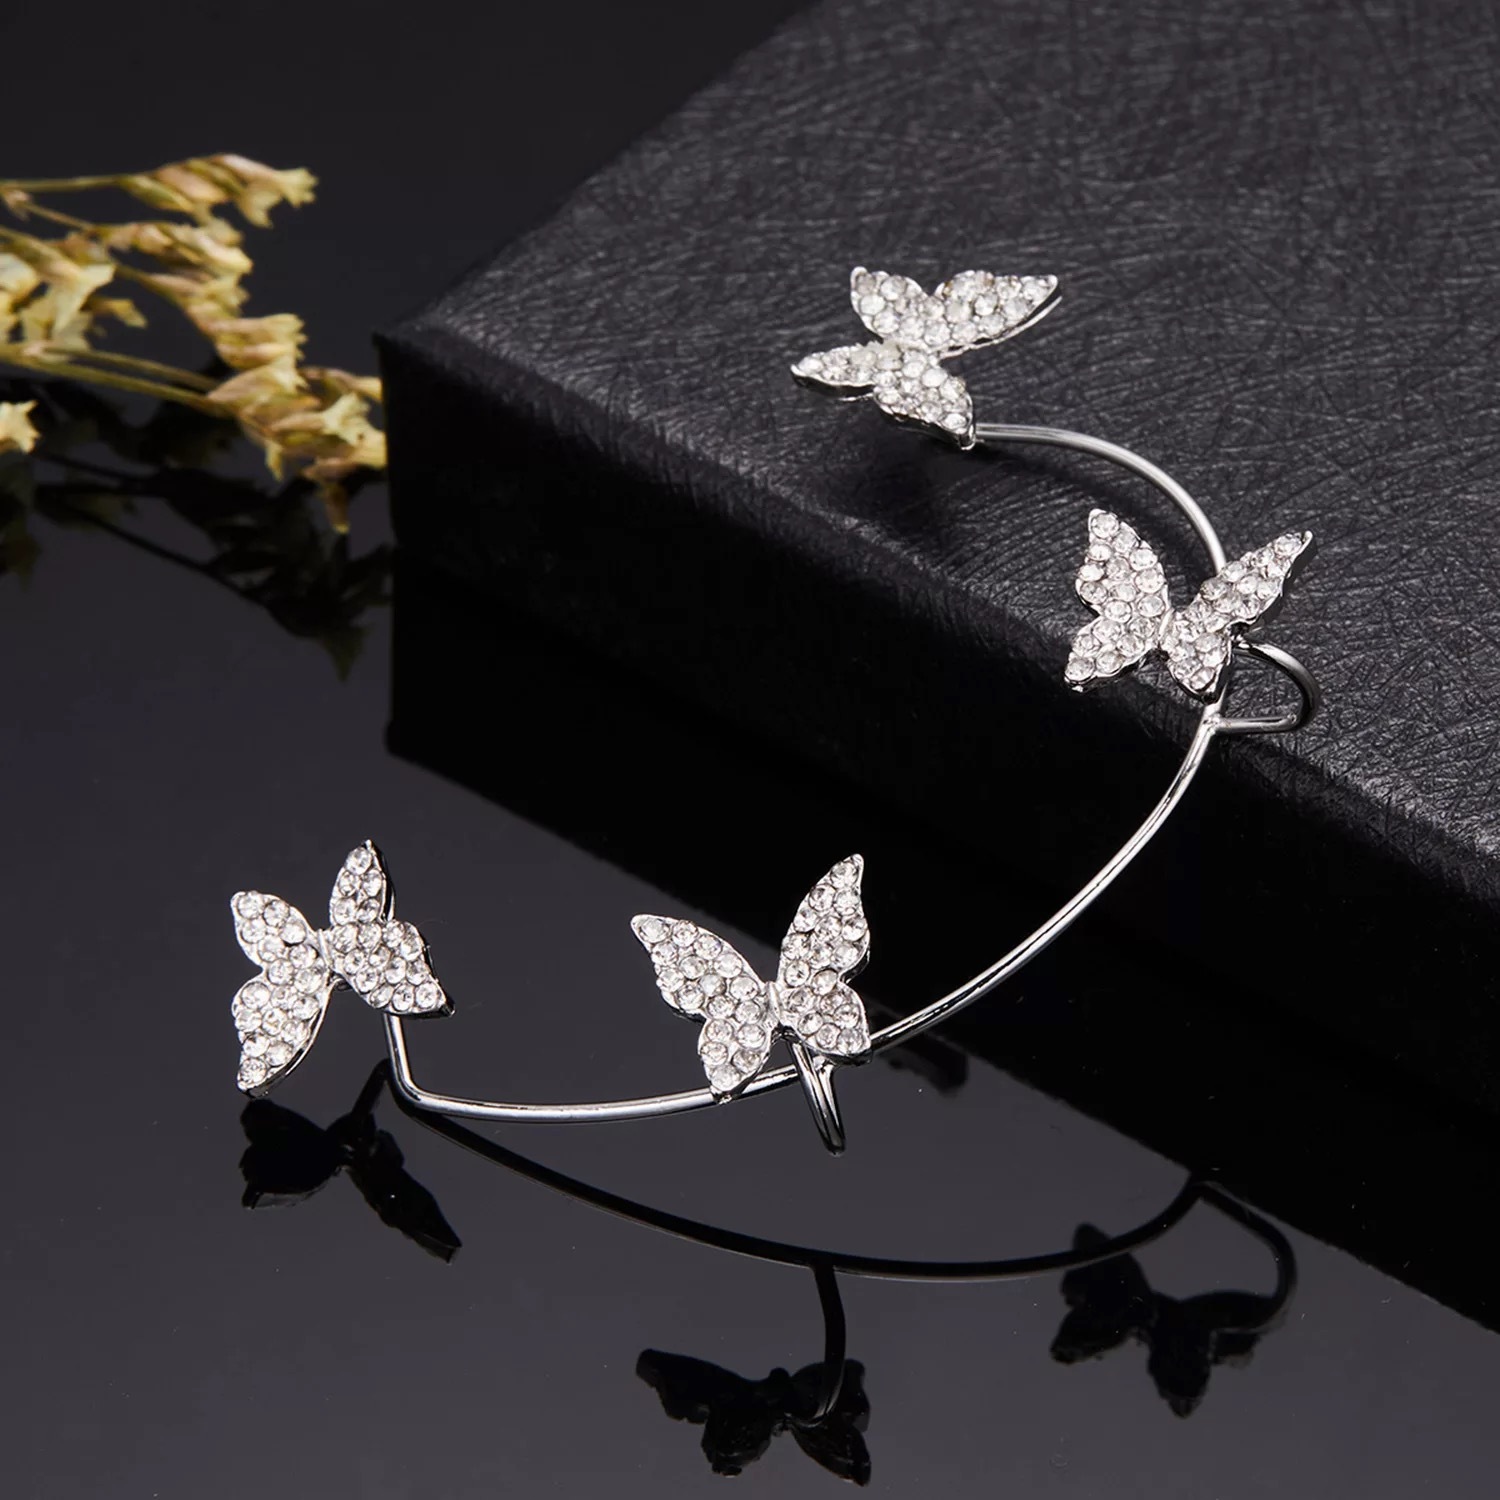 Korean Silver-plated No Piercing Zircon Butterfly Wrap Crawler Ear Cuff Earrings 2Pcs/Set